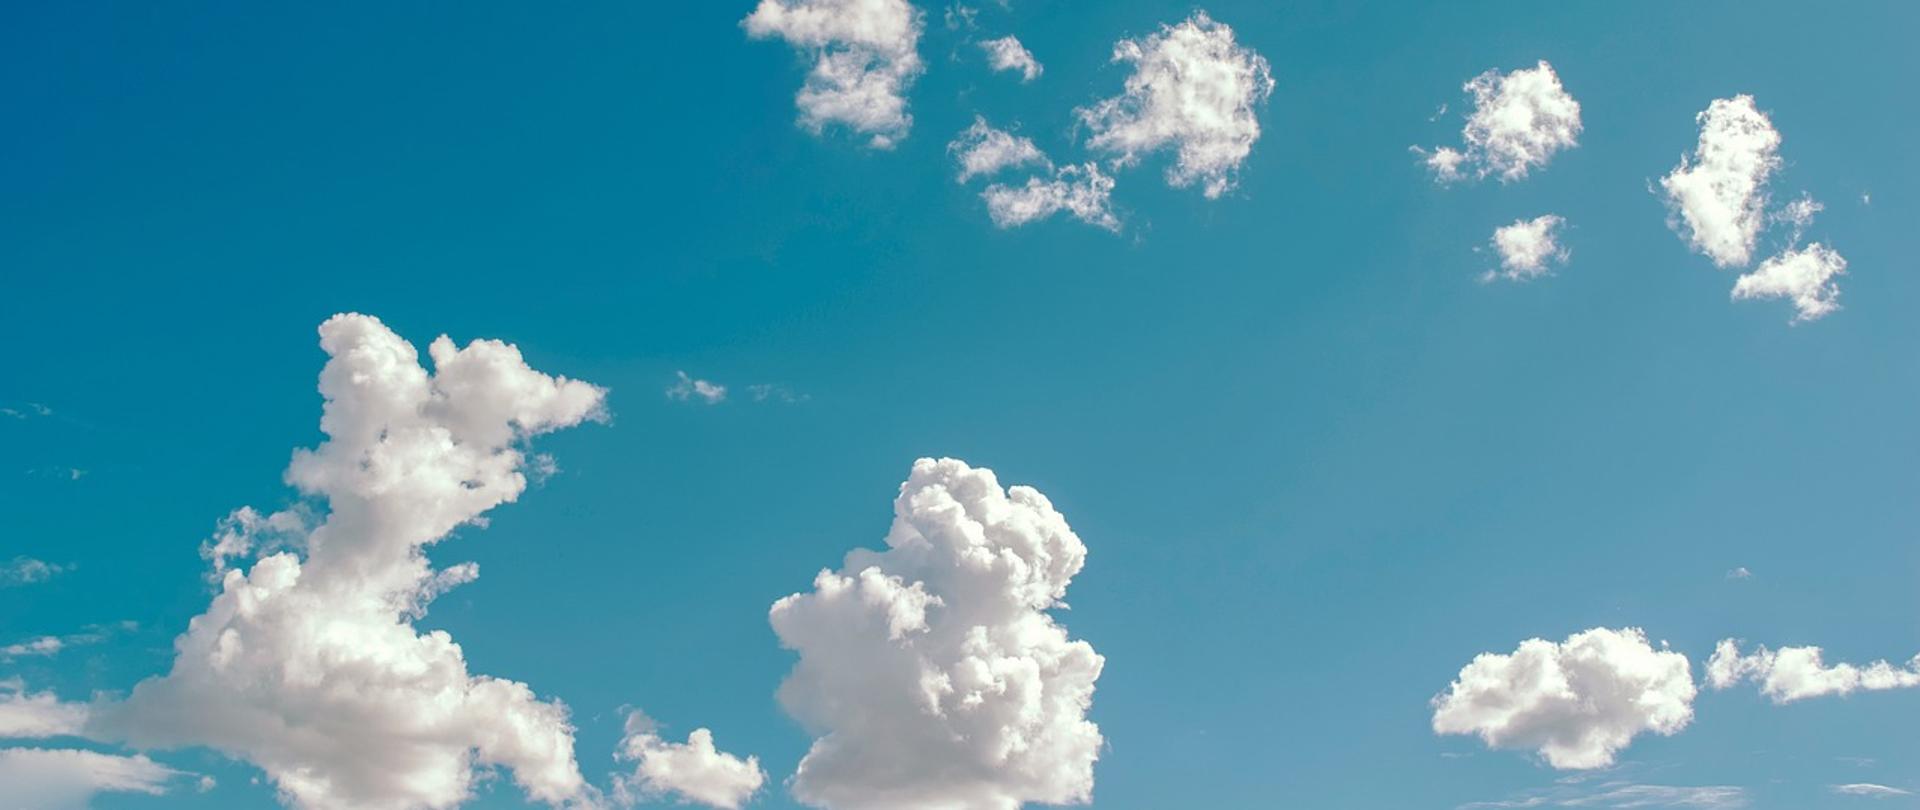 Zdjęcie przedstawia chmury na niebie